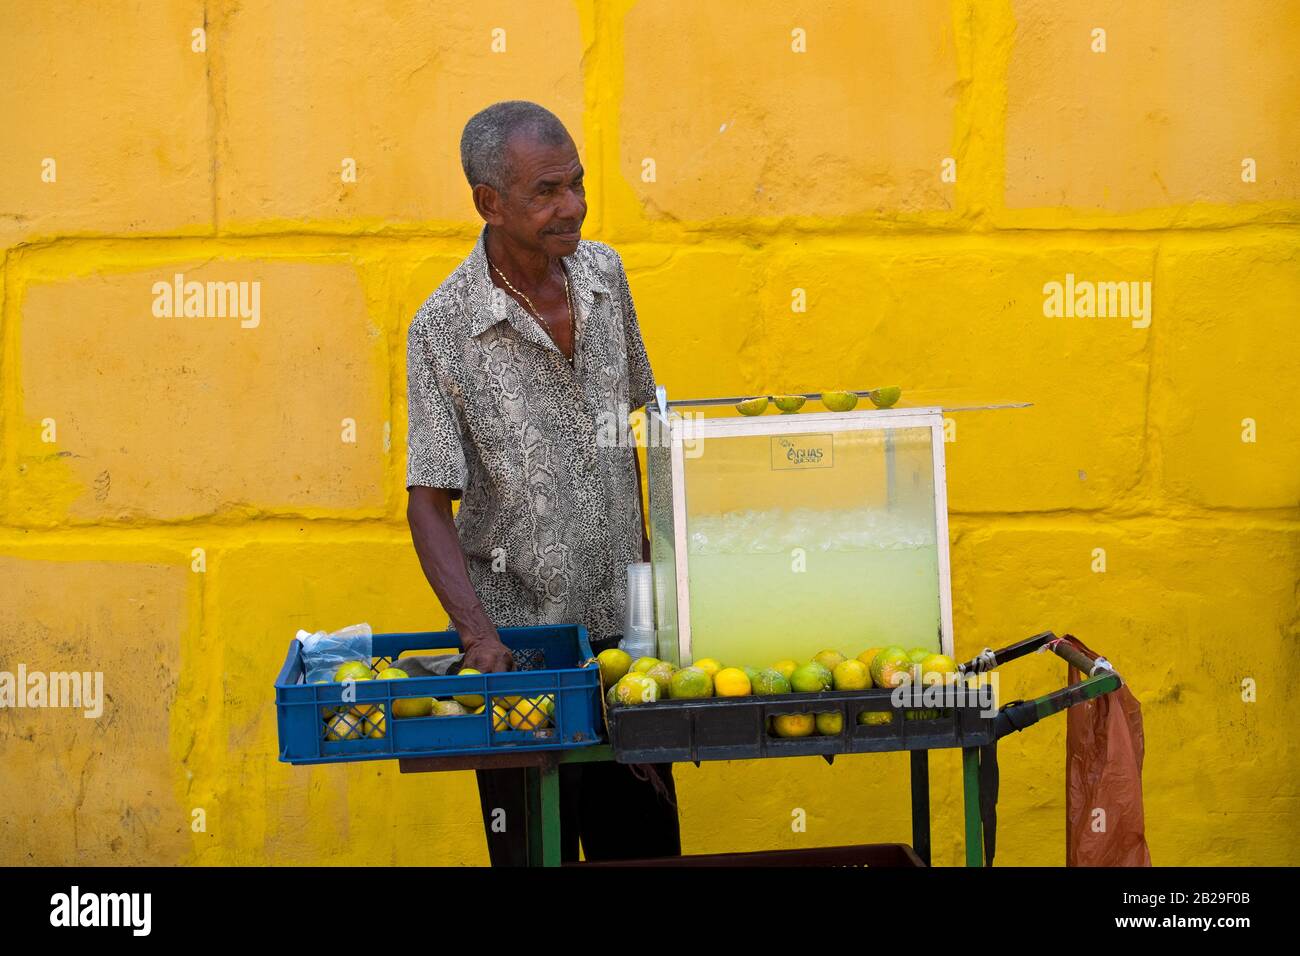 Un homme vend de la limonade dans une rue de Cartagena, en Colombie Banque D'Images